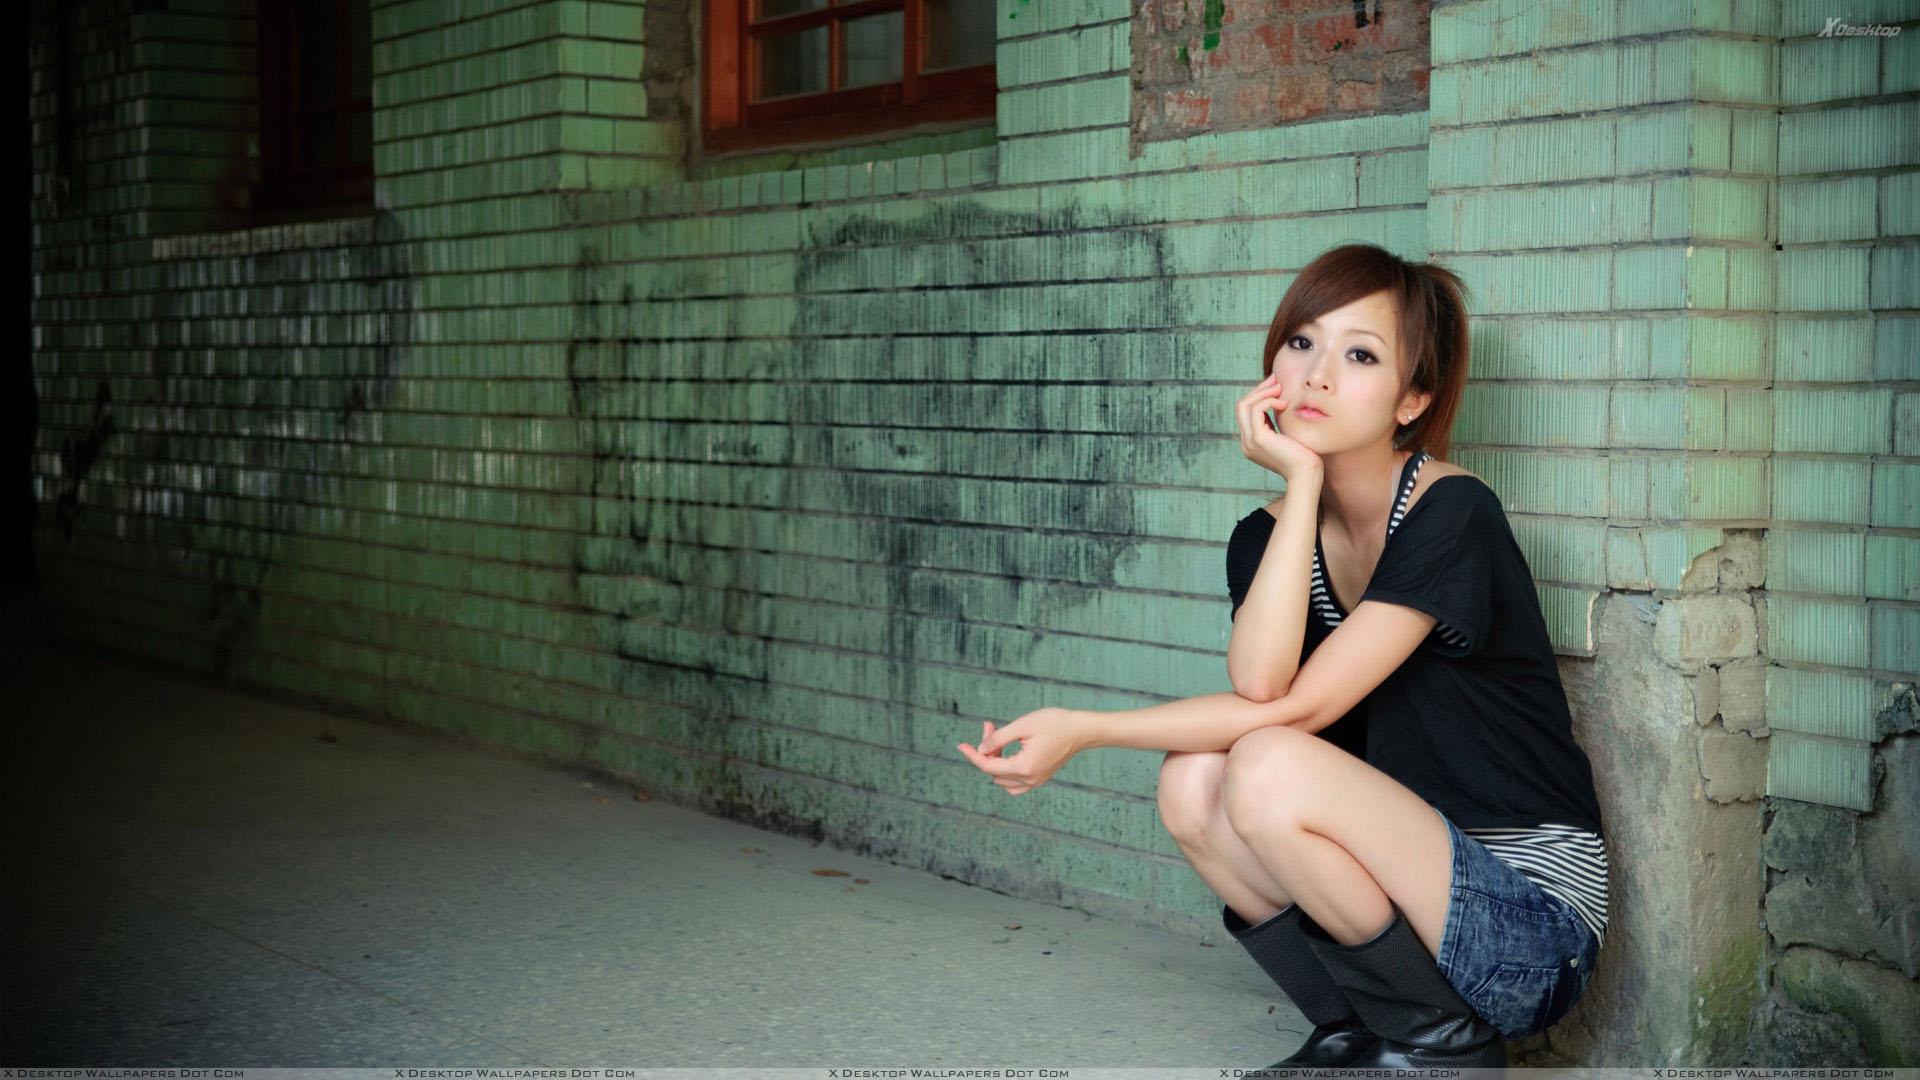 Asian Girl Sitting Pose Outside Metro Station Wallpaper